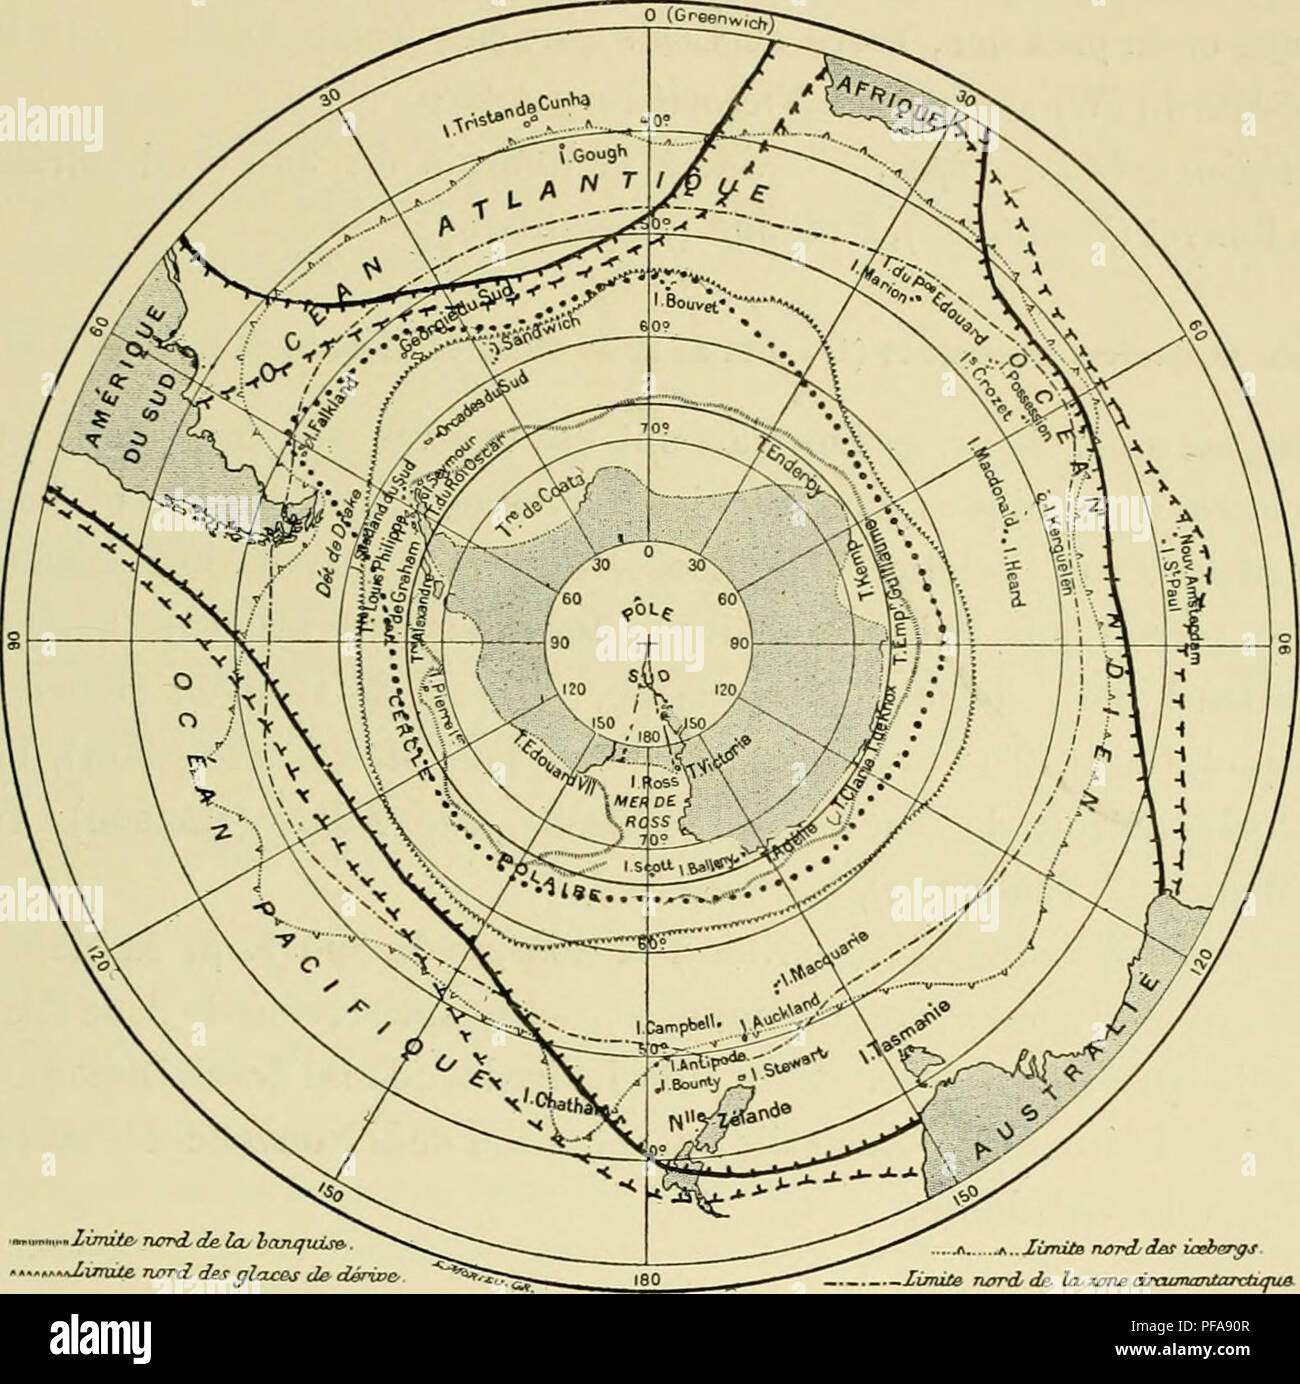 . Deuxième expédition antarctique francaise (1908-1910). Natural history -- Antarctica; Scientific expeditions -- Antarctica; Antarctica. OISEA rx A NT A RC TIQUES. 191 ouest (le rAmériquo du Sud, mors du (lap, Iverguelon, sud de rocéan Indien, Australie^ Nouvelle-Zélande, île C-liathani. 23. Halobaena caerulea (1 8-9 16-17-32-42-44-55-56-59-65 66-68). ni&gt;fjion witarrfiqi(e. — m'33' S., 22°88' W. (Bruce), GloS. et 1 lO&quot; W. (Gain). liri/lon suhanfarcl/f/HO. — Mers du Sud jusqu'au 10°. Nids sur l'ile. •.-rXinvUe narxZ des qIclcb^ d&amp; dérioe- ji f...XimiiB Twvd/der ireb&amp;^s limite r Stock Photo